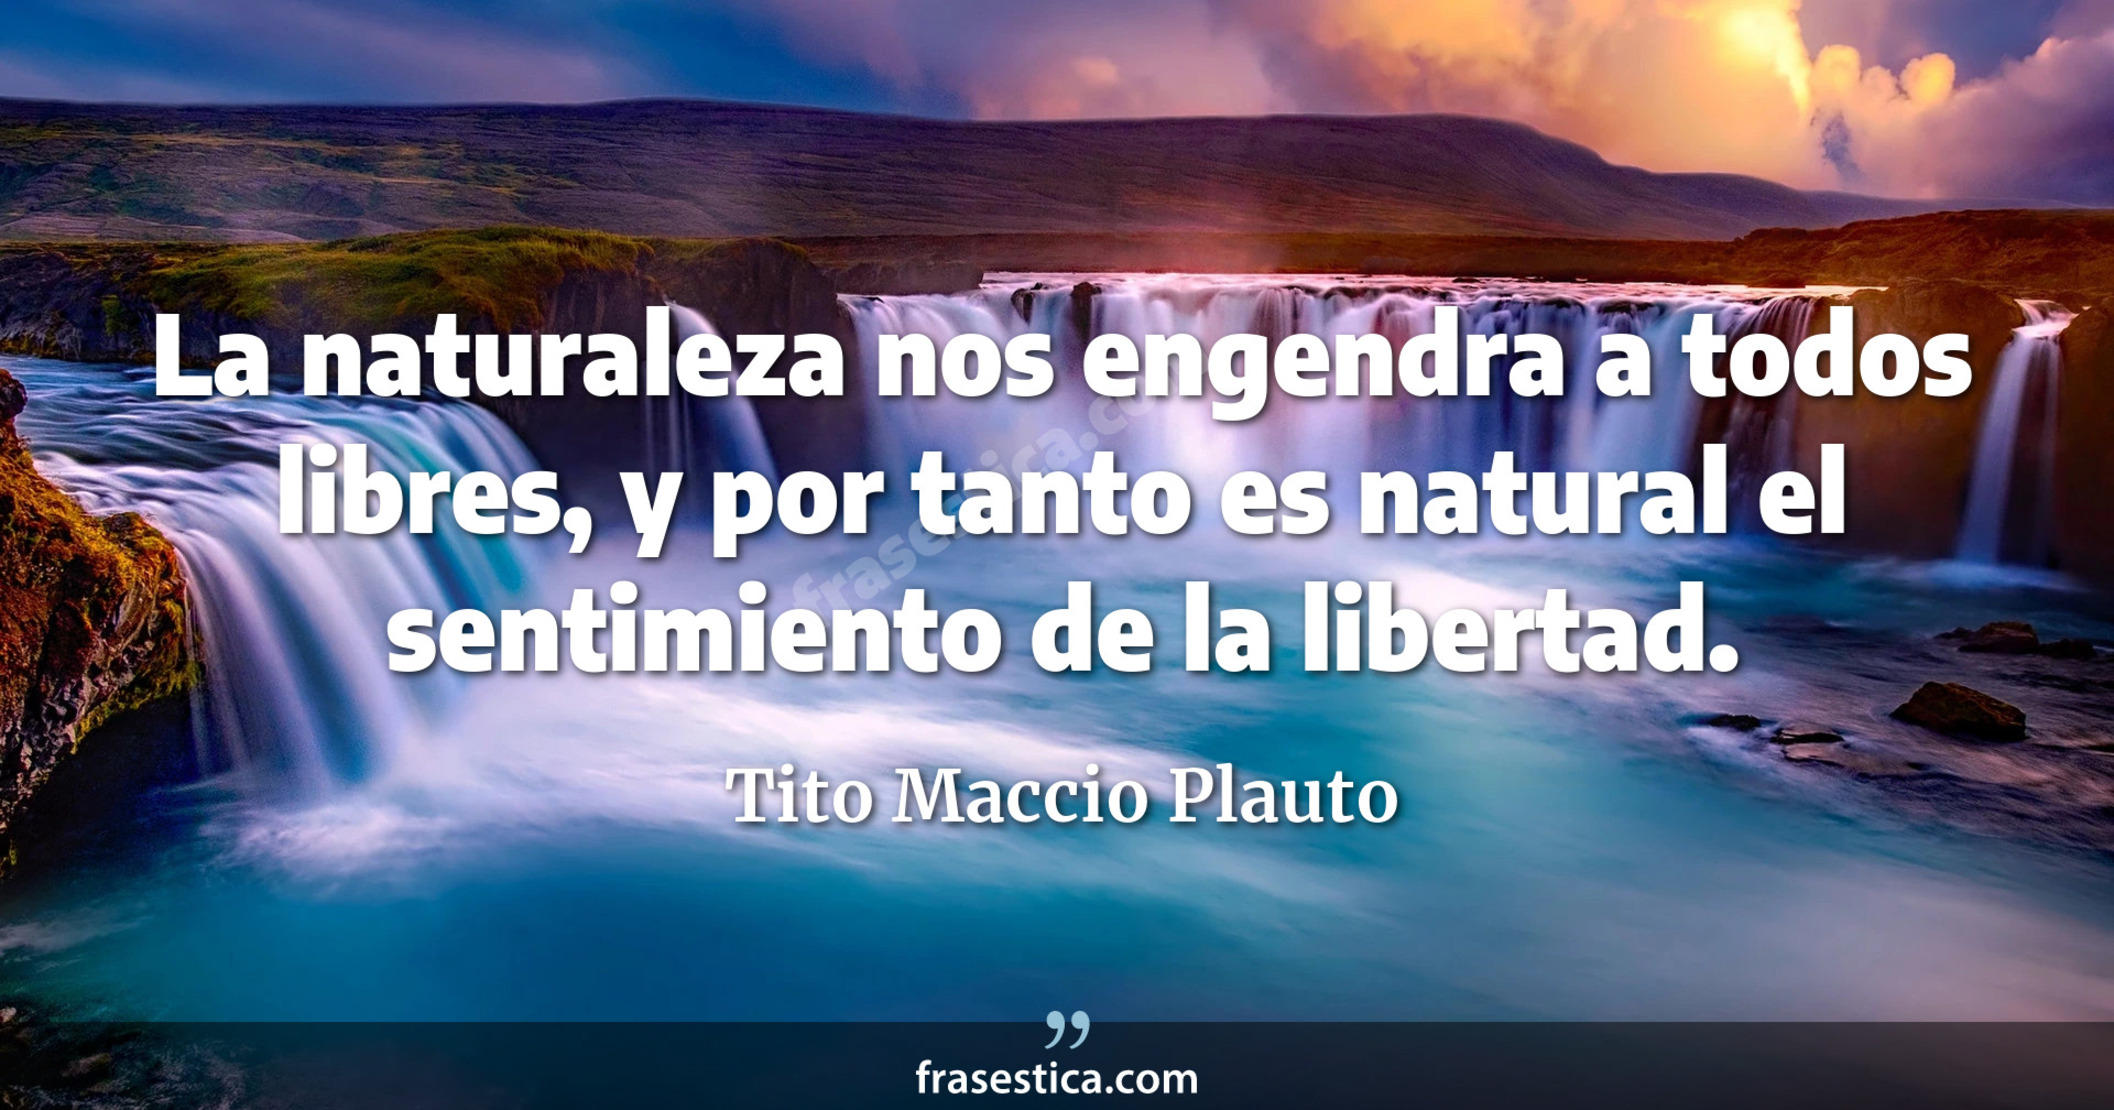 La naturaleza nos engendra a todos libres, y por tanto es natural el sentimiento de la libertad. - Tito Maccio Plauto